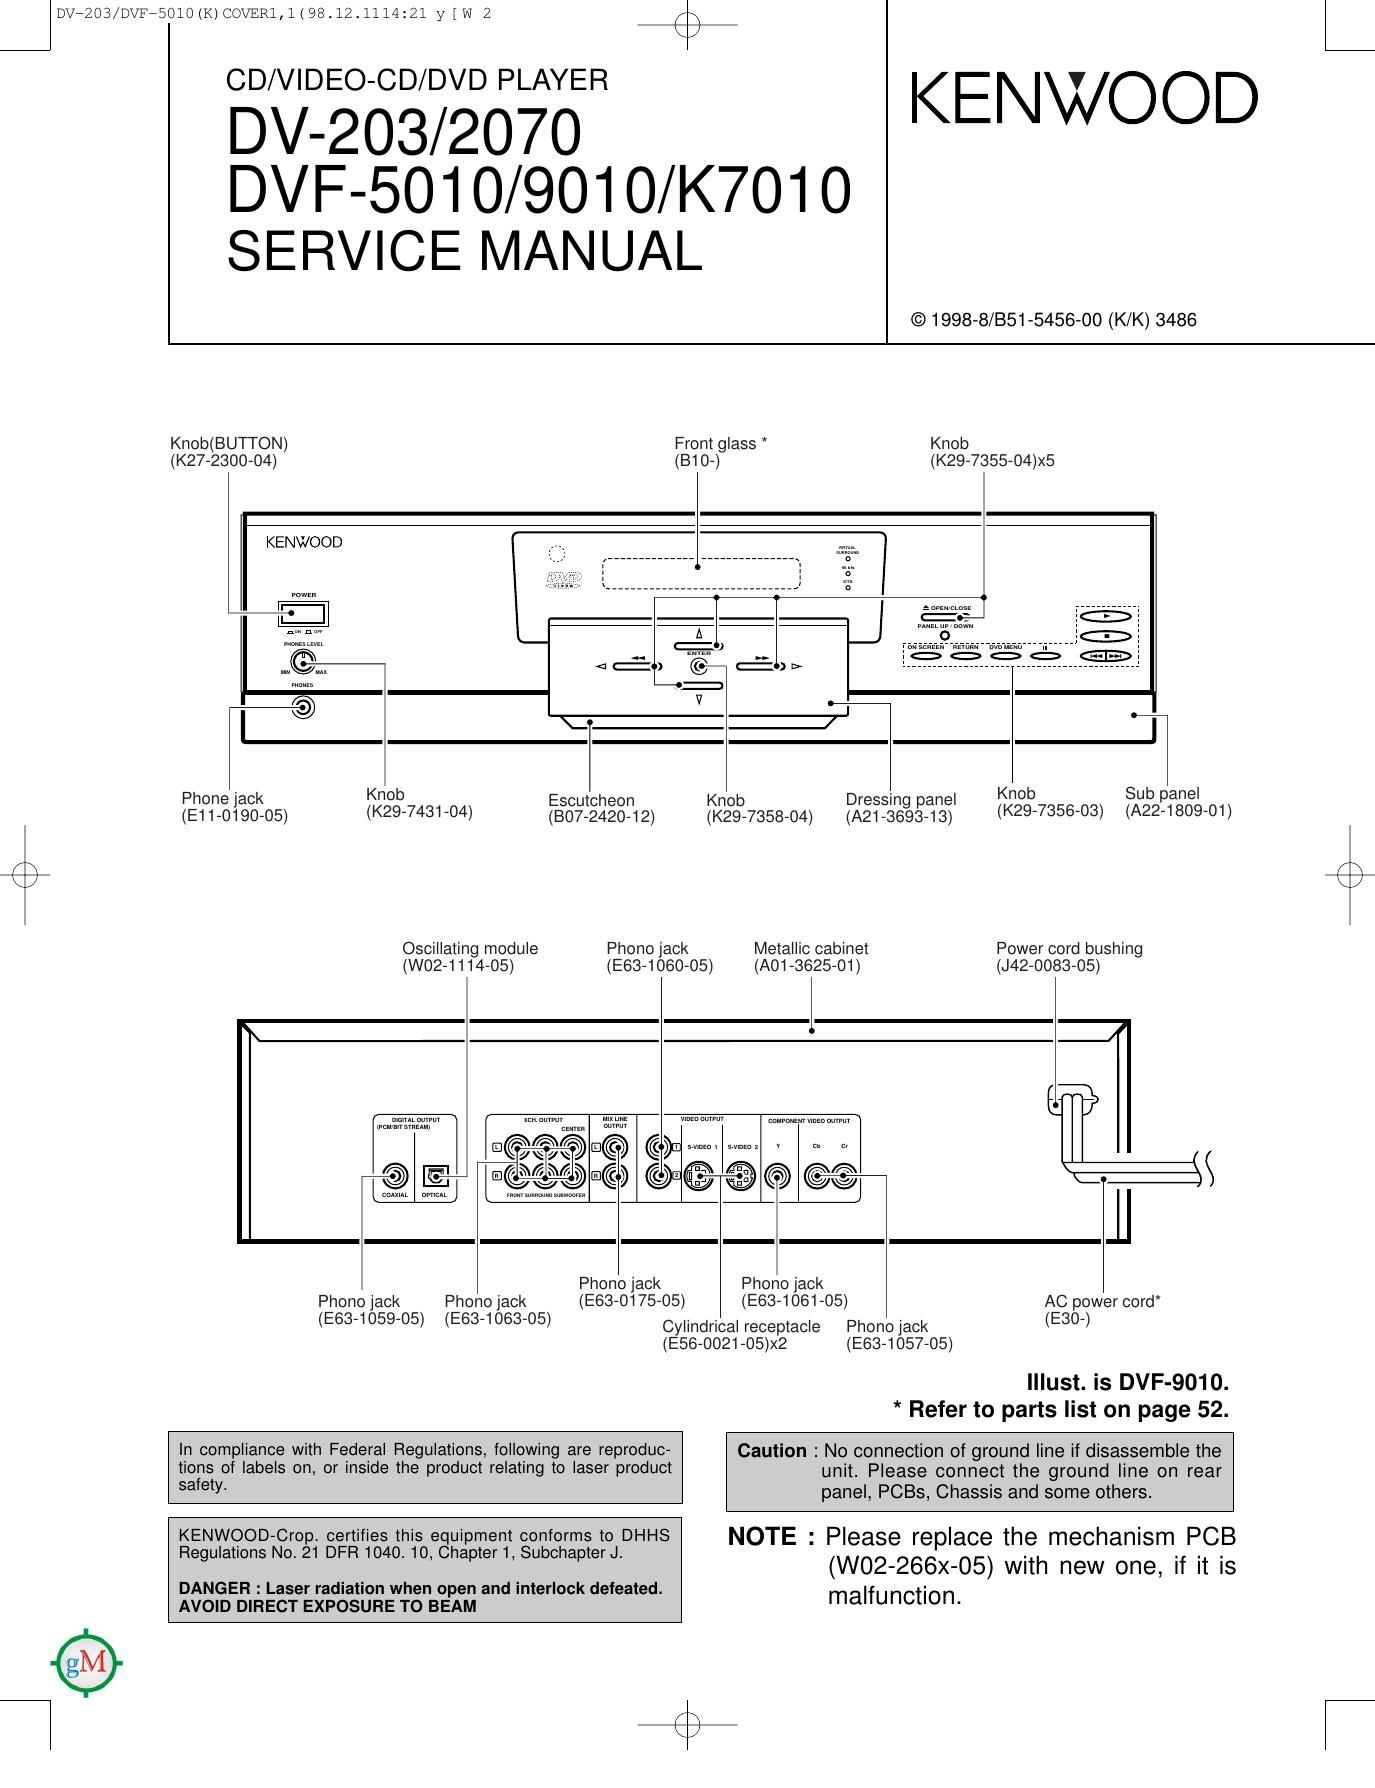 Kenwood DVF 5010 Service Manual